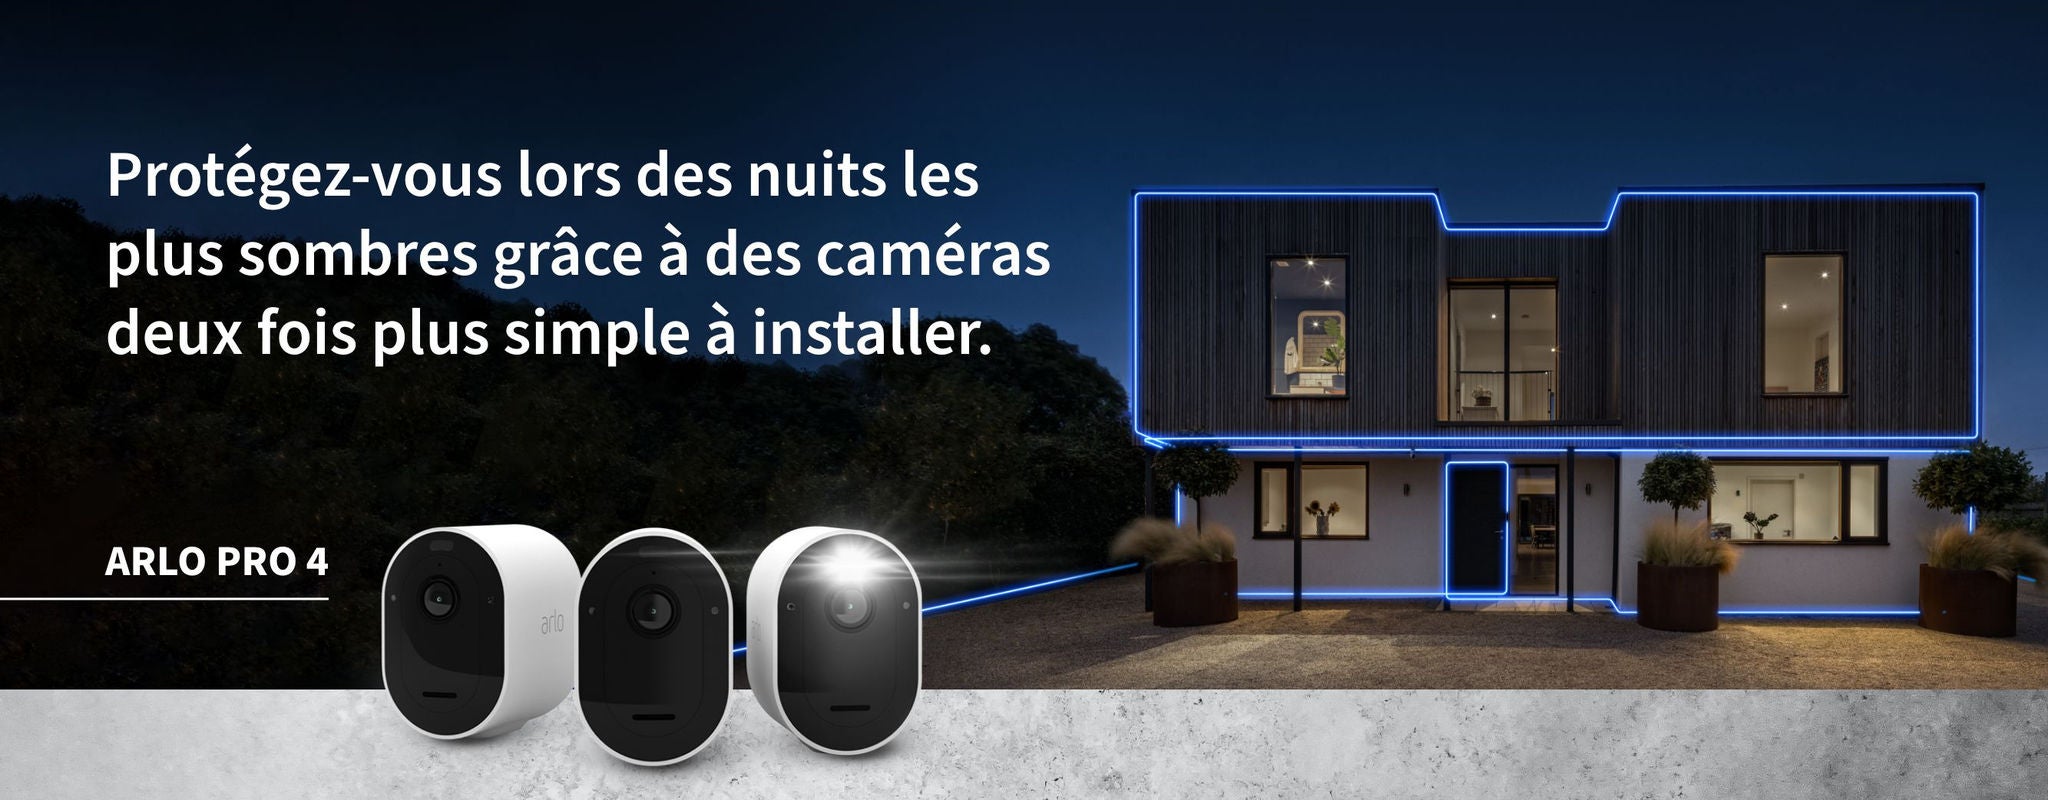 Une maison sécurisée dans la nuit par trois caméras Arlo Pro 4